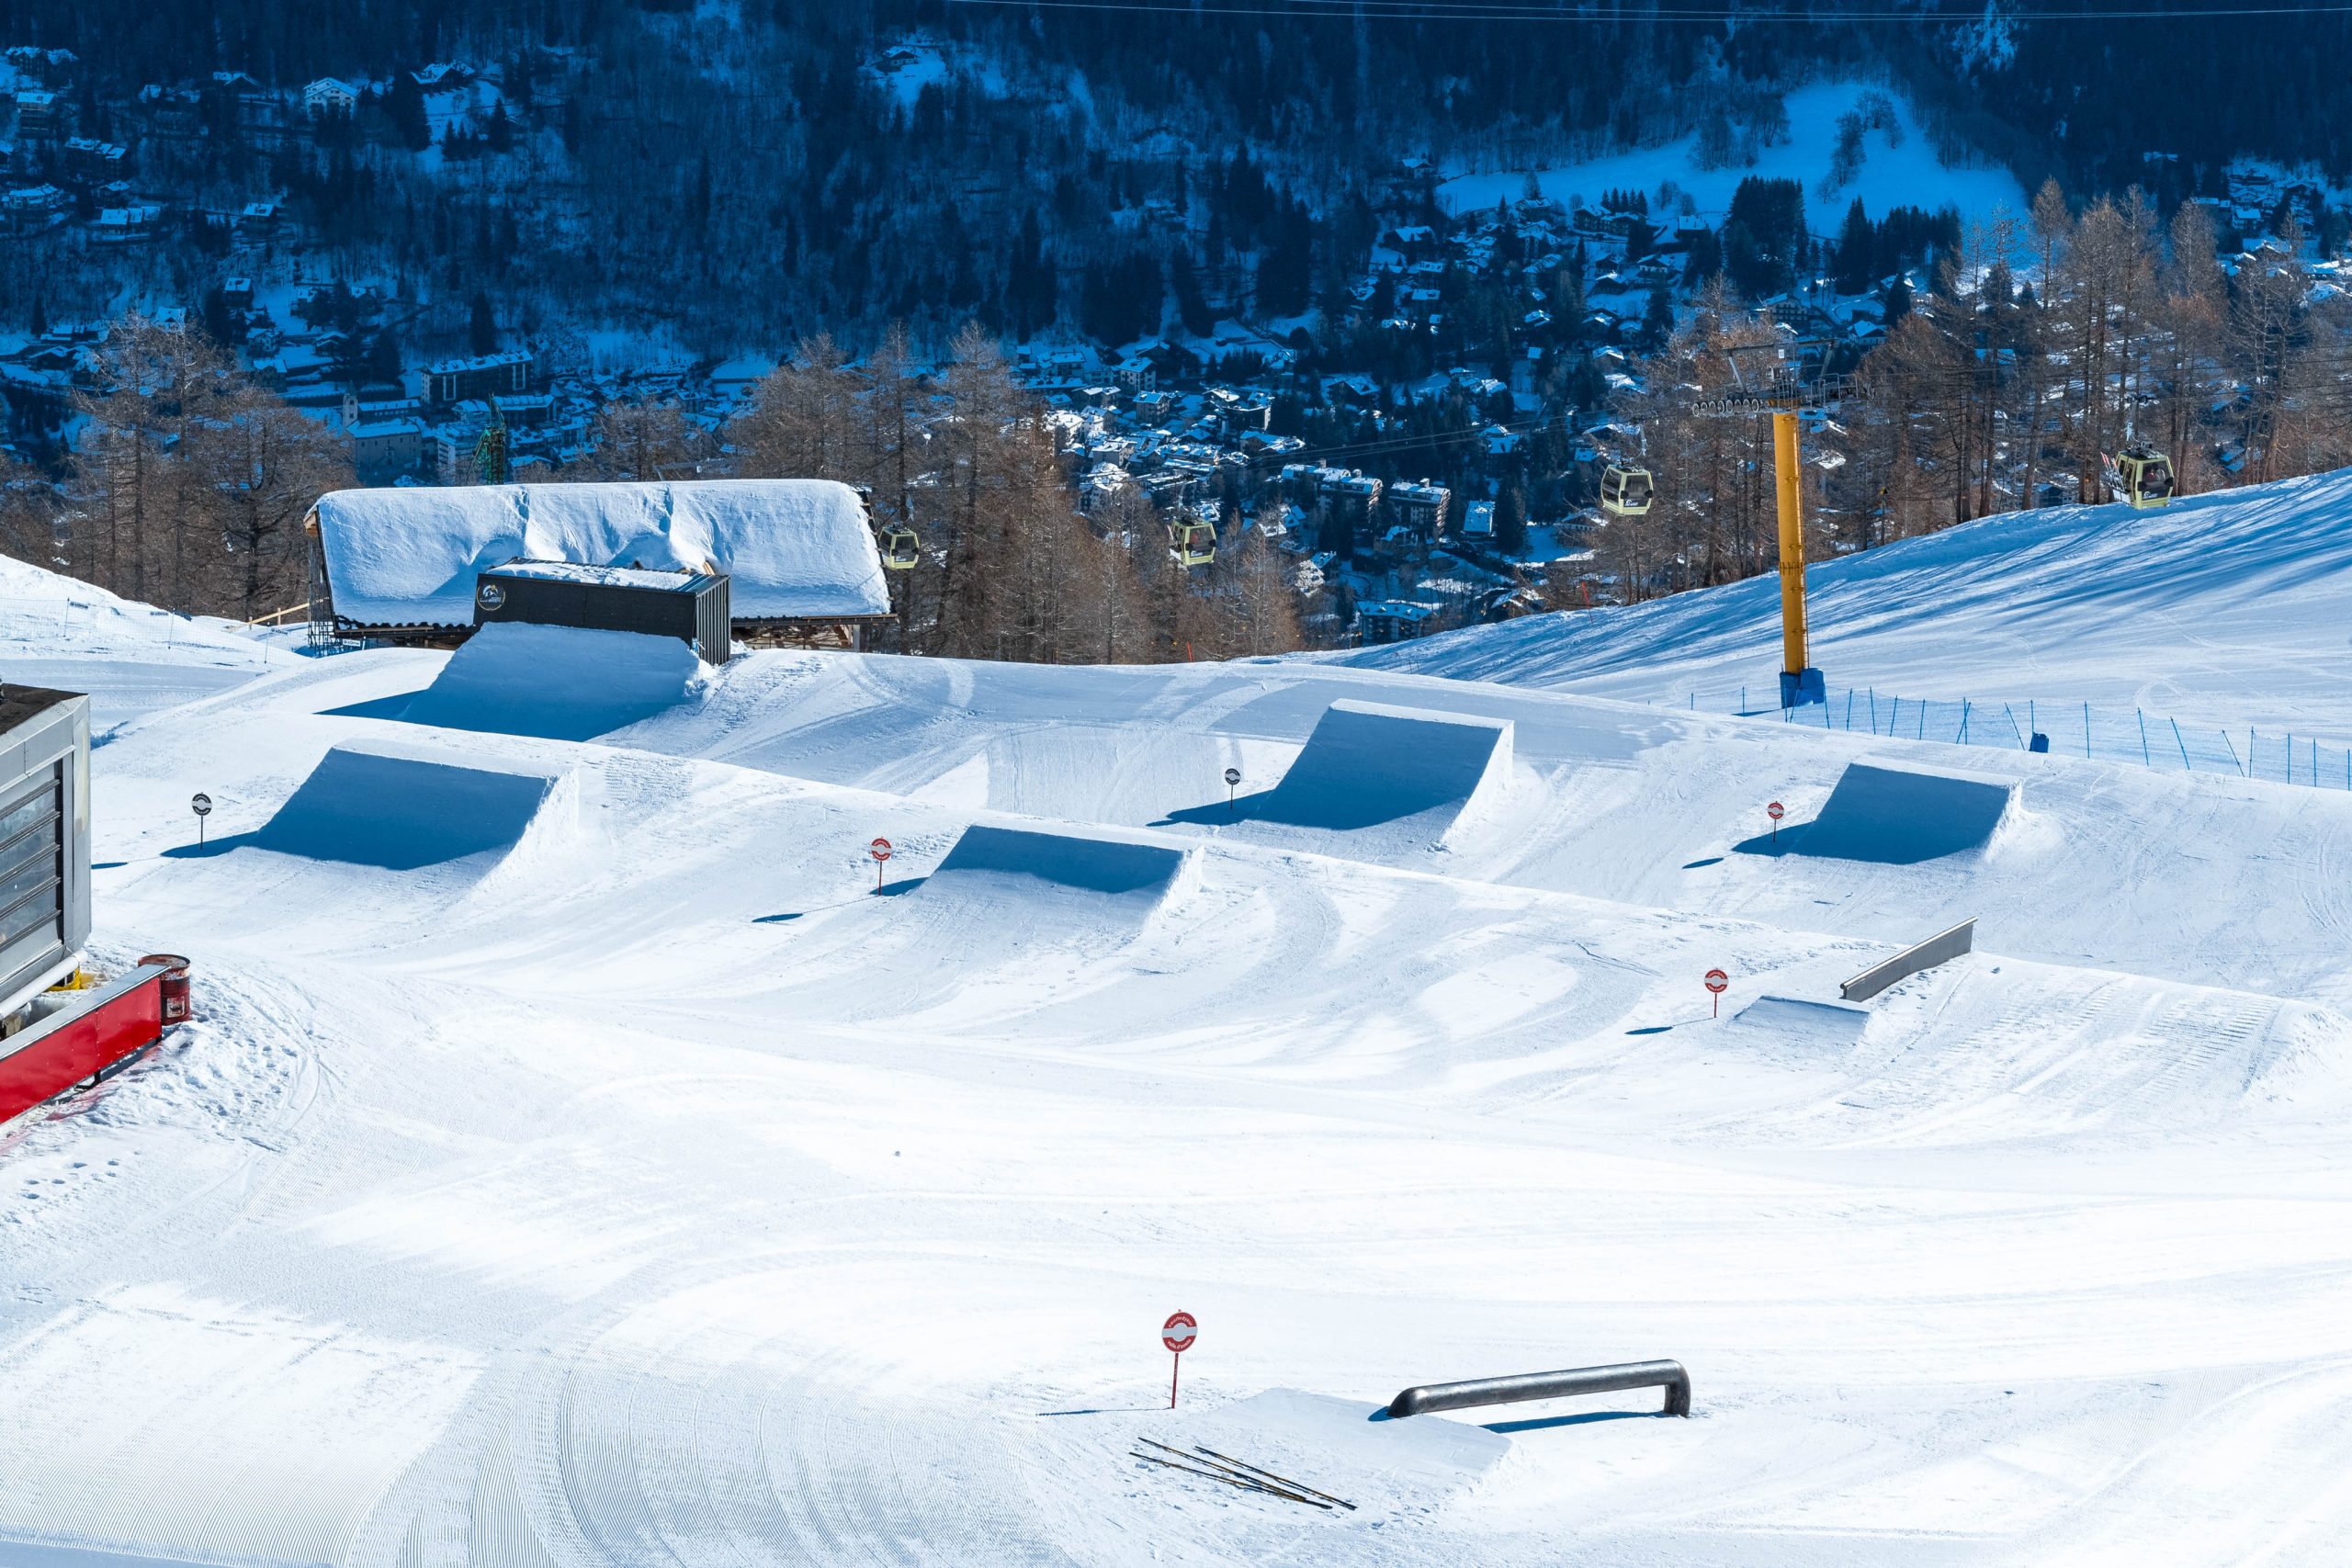 SNOW PARK
Per gli amanti dello sci acrobatico, Courmayeur offre uno Snowpark straordinario situato nel cuore pulsante del comprensorio sciistico. A 2000 metri di altitudine, questo park è un paradiso per coloro che amano le acrobazie sulla neve. È progettato in modo meticoloso e offre un’area progressiva con quattro linee adatte a tutti i livelli di abilità, con rail, whoop e funbox. Ci sono anche due tipi di salti, easy e medium, e rail pensati per principianti e giovani sciatori. Inizia la tua avventura nello Snowpark di Courmayeur!
Scopri di più
